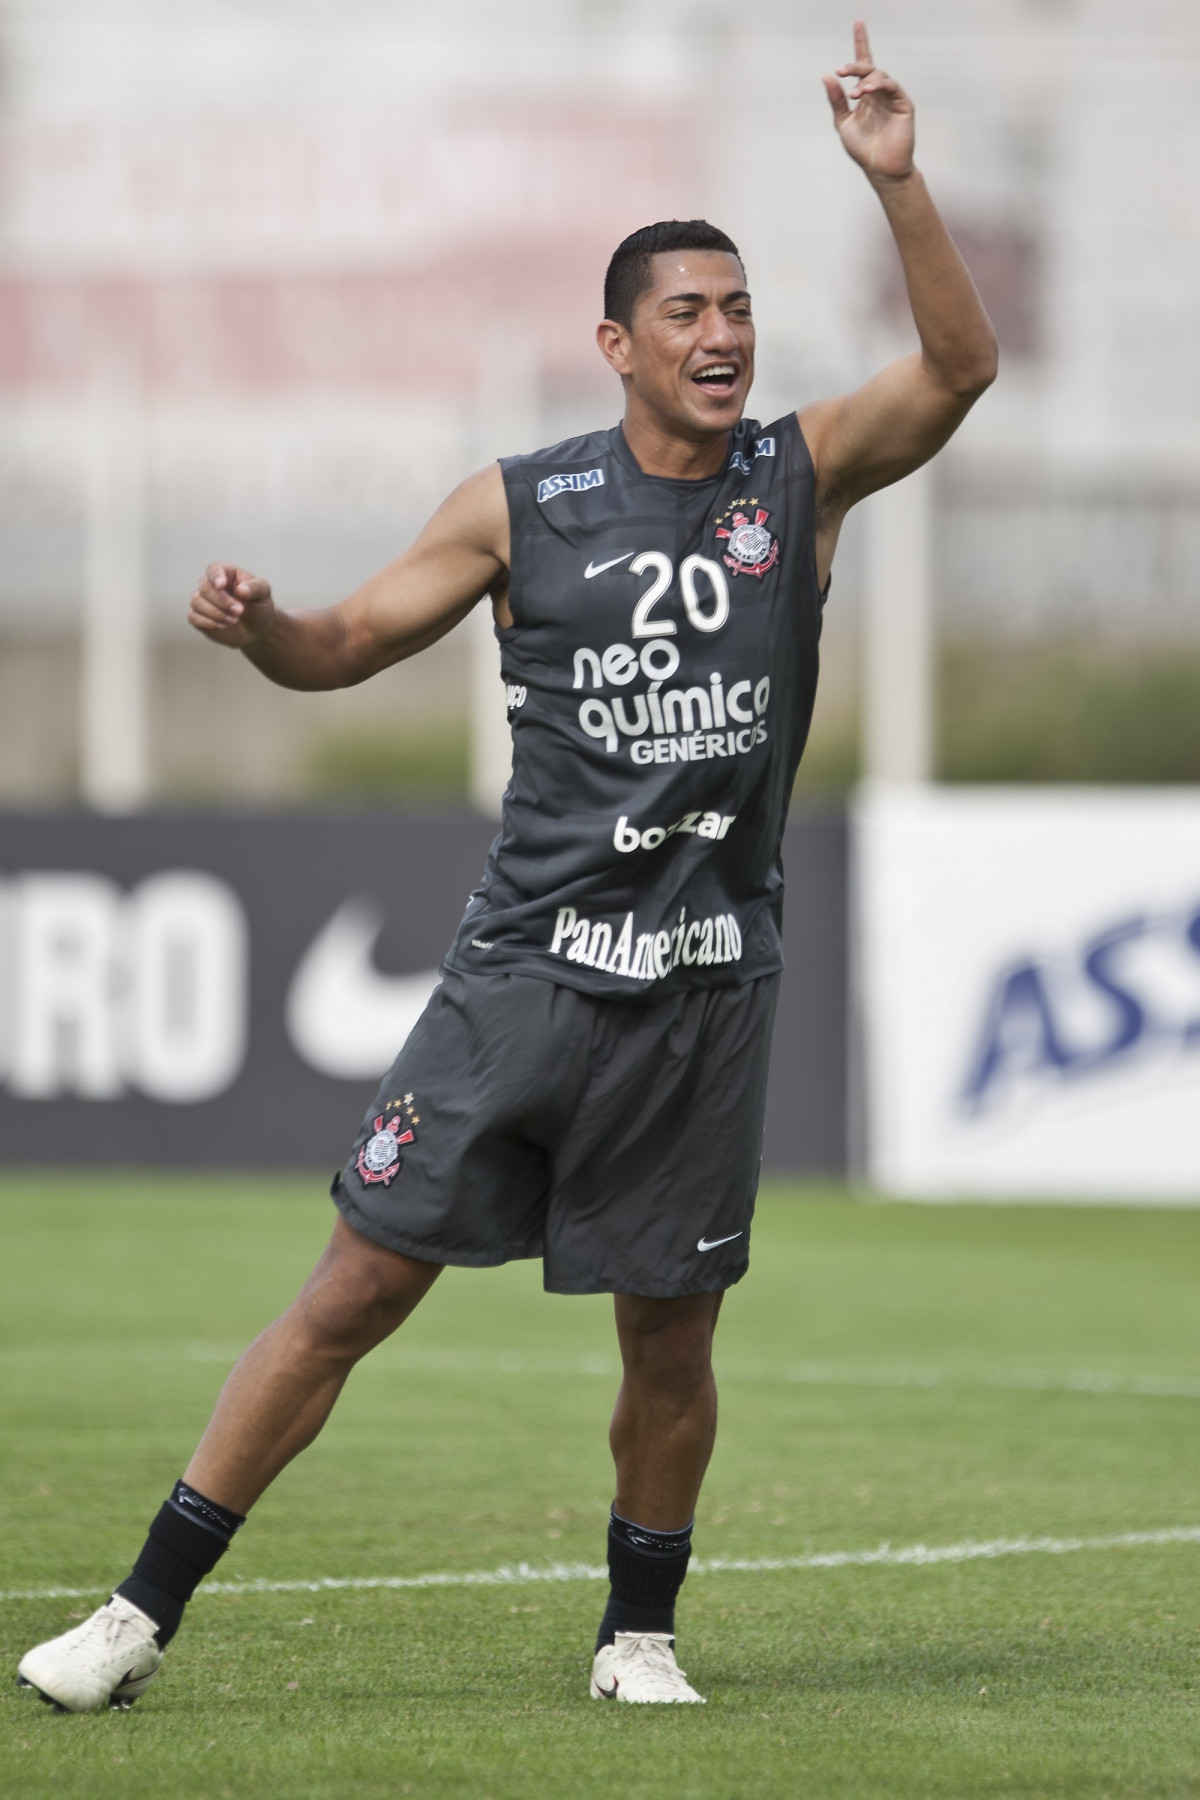 Ralf durante o treino do Corinthians, realizado esta tarde no CT Joaquim Grava no Parque Ecolgico. O prximo jogo da equipe ser domingo, dia 07/11, contra o So Paulo, no Morumbi, pela 34. a rodada do Campeonato Brasileiro de 2010